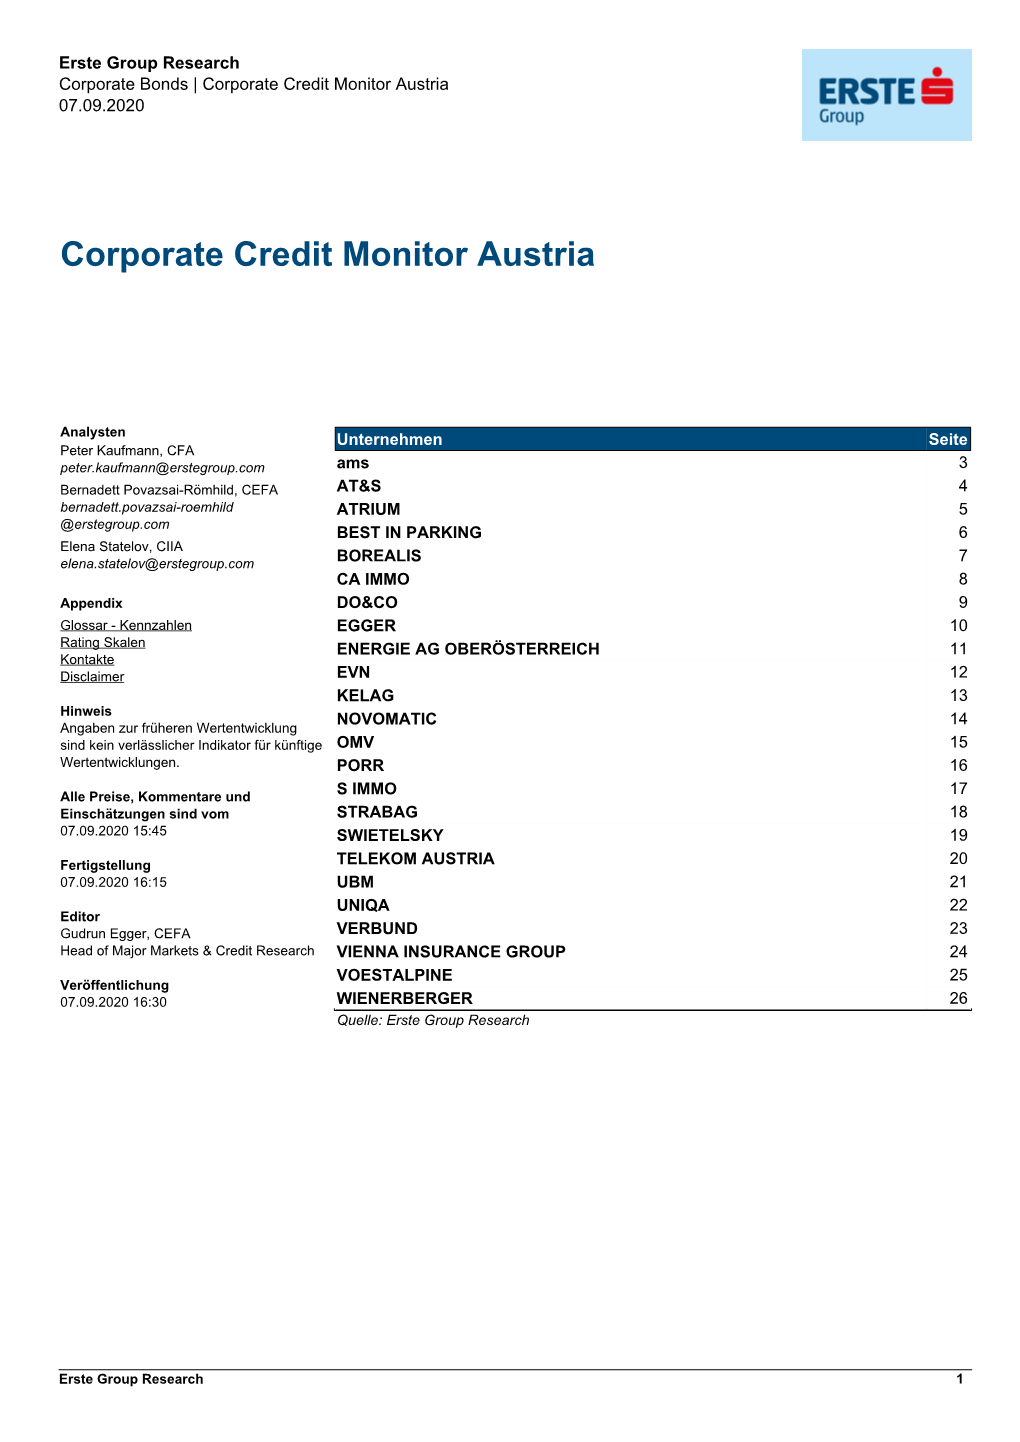 Corporate Credit Monitor Austria 07.09.2020